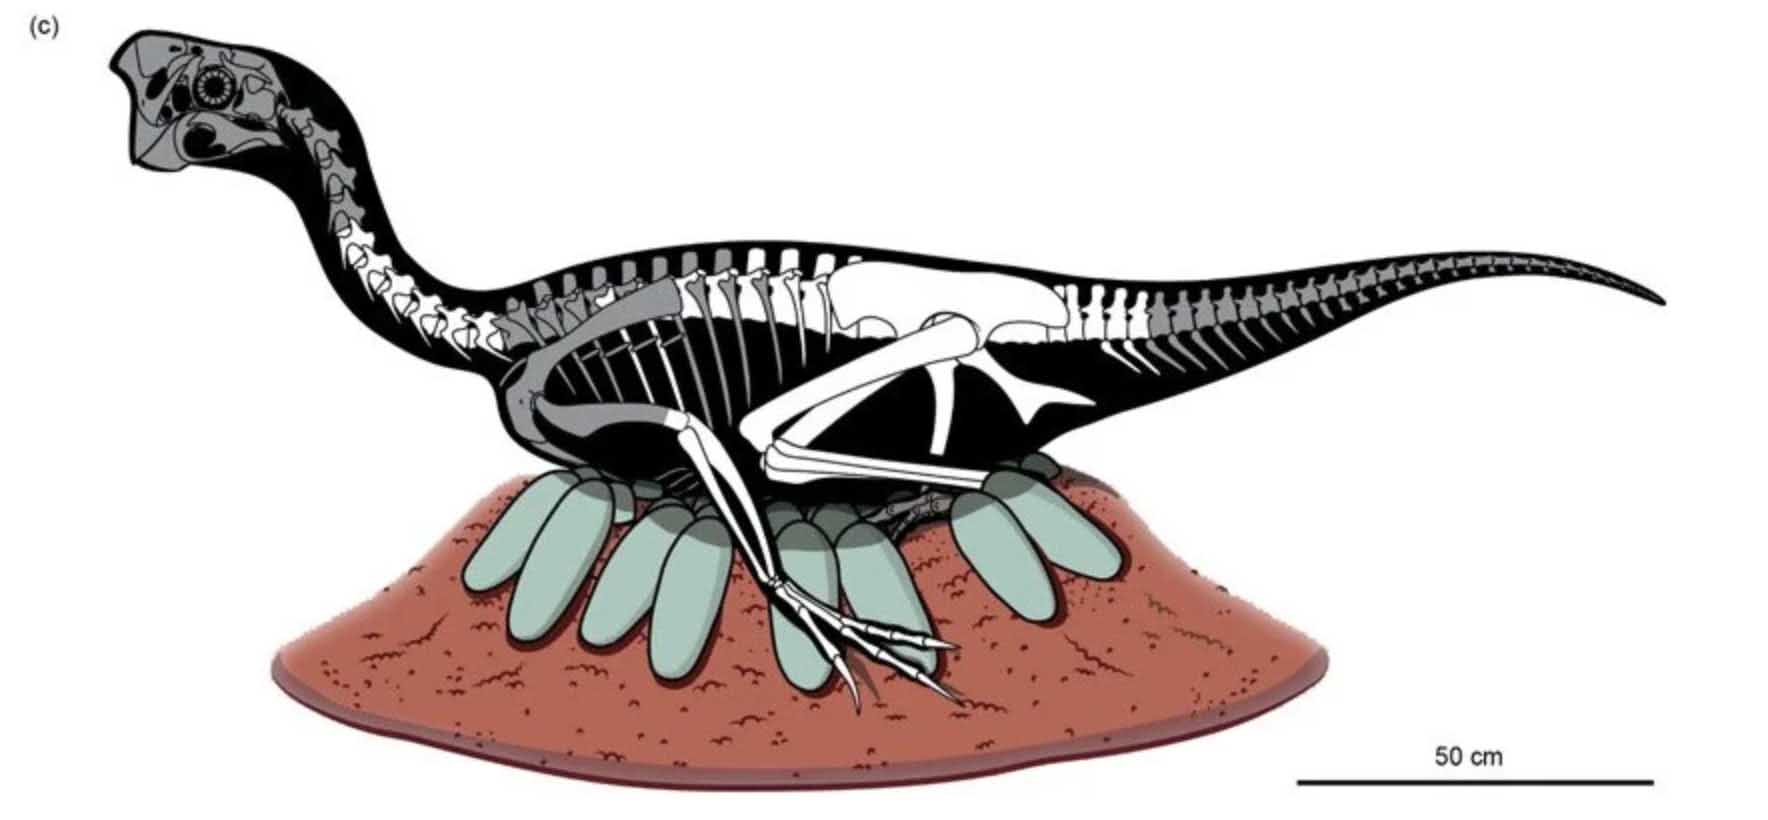 Neuveriteľne zachované embryo dinosaura nájdené vo fosílnom vajíčku 2